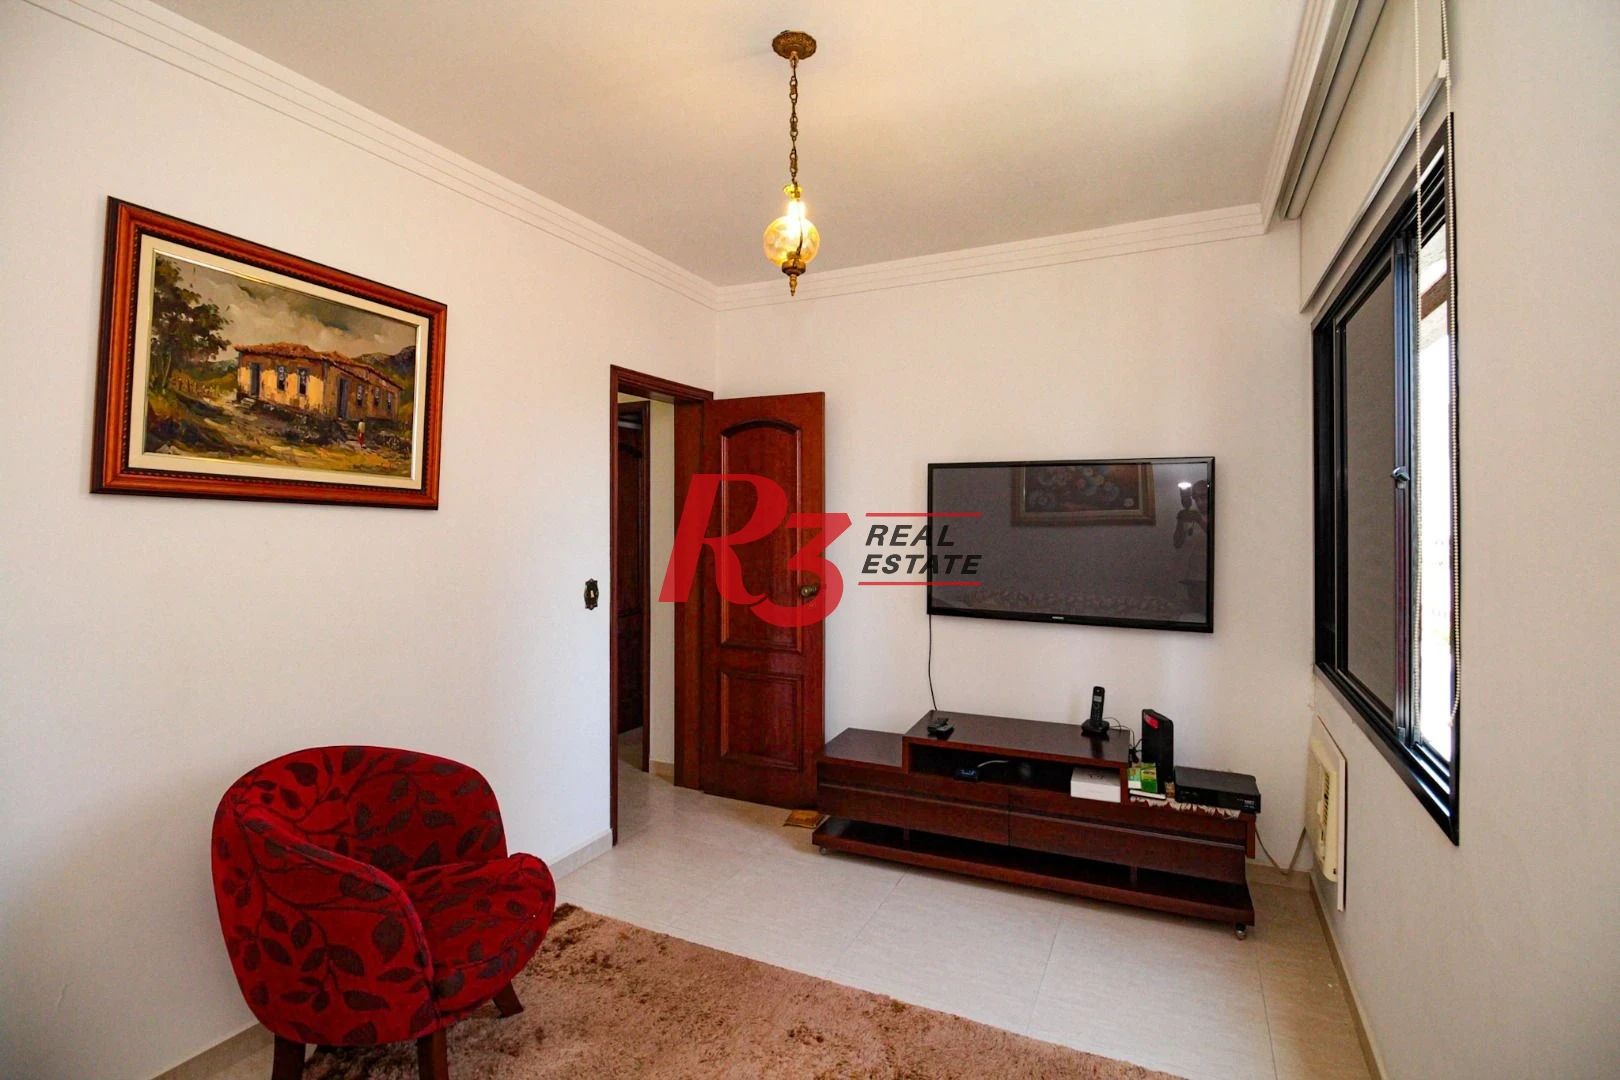 Apartamento com 3 dormitórios para alugar, 169 m² por R$ 6.000,00/mês - Boqueirão - Santos/SP